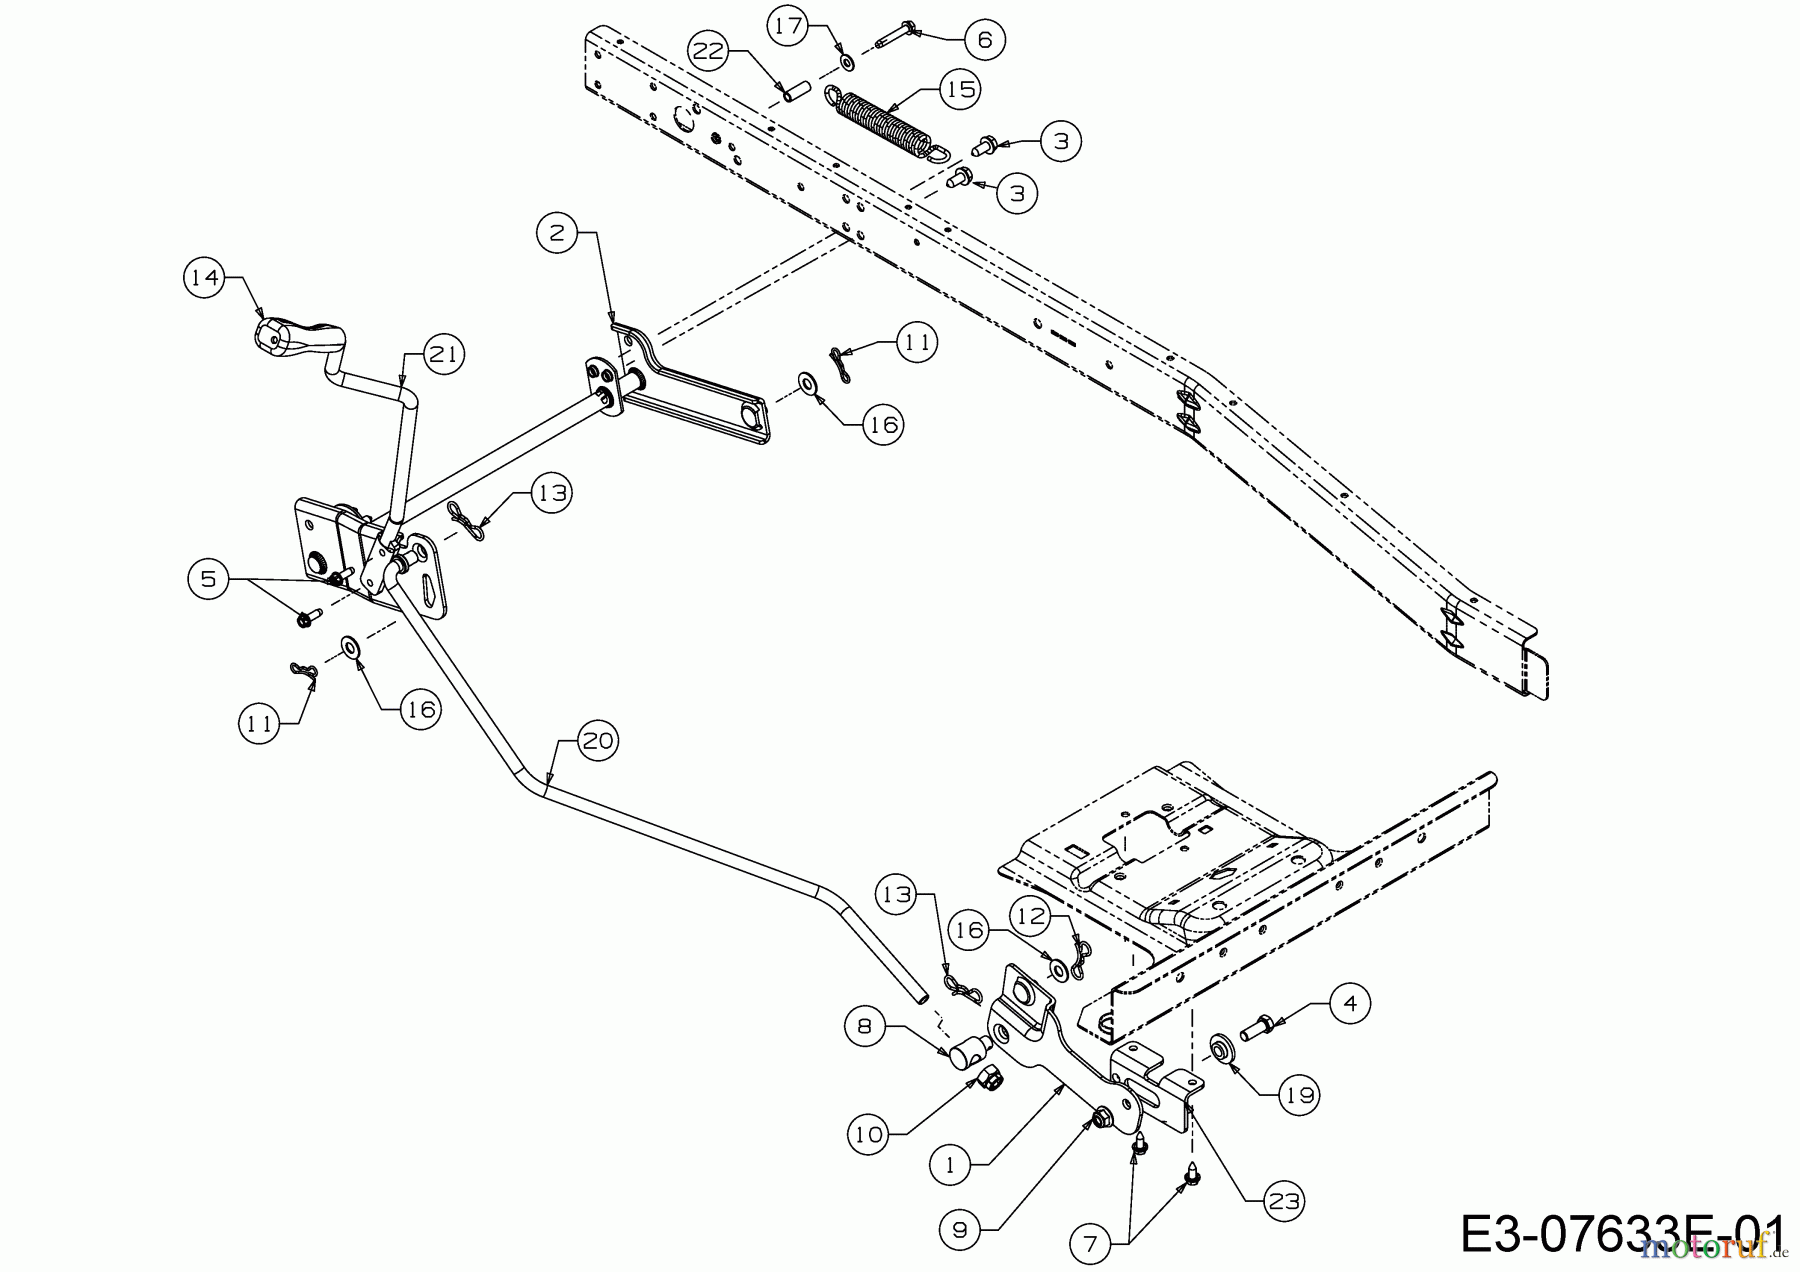  WOLF-Garten Expert Rasentraktoren Scooter Pro Hydro 13A221HD650  (2017) Mähwerksaushebung